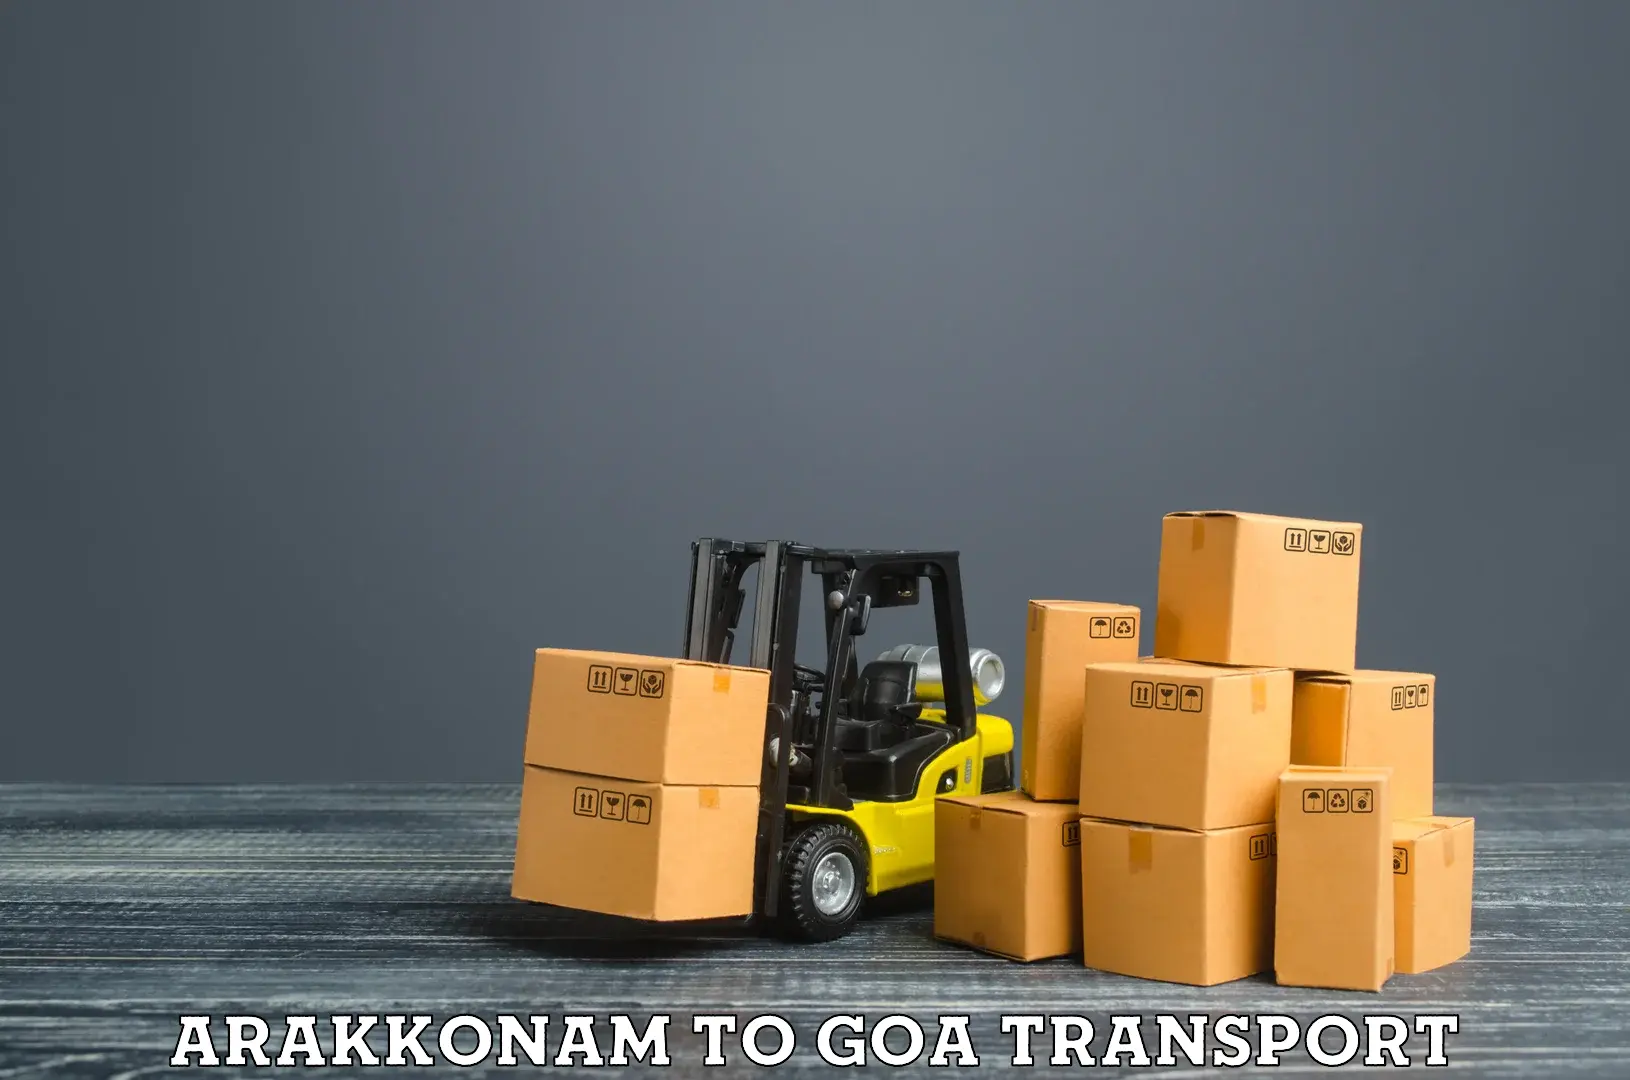 Nearby transport service Arakkonam to Panjim